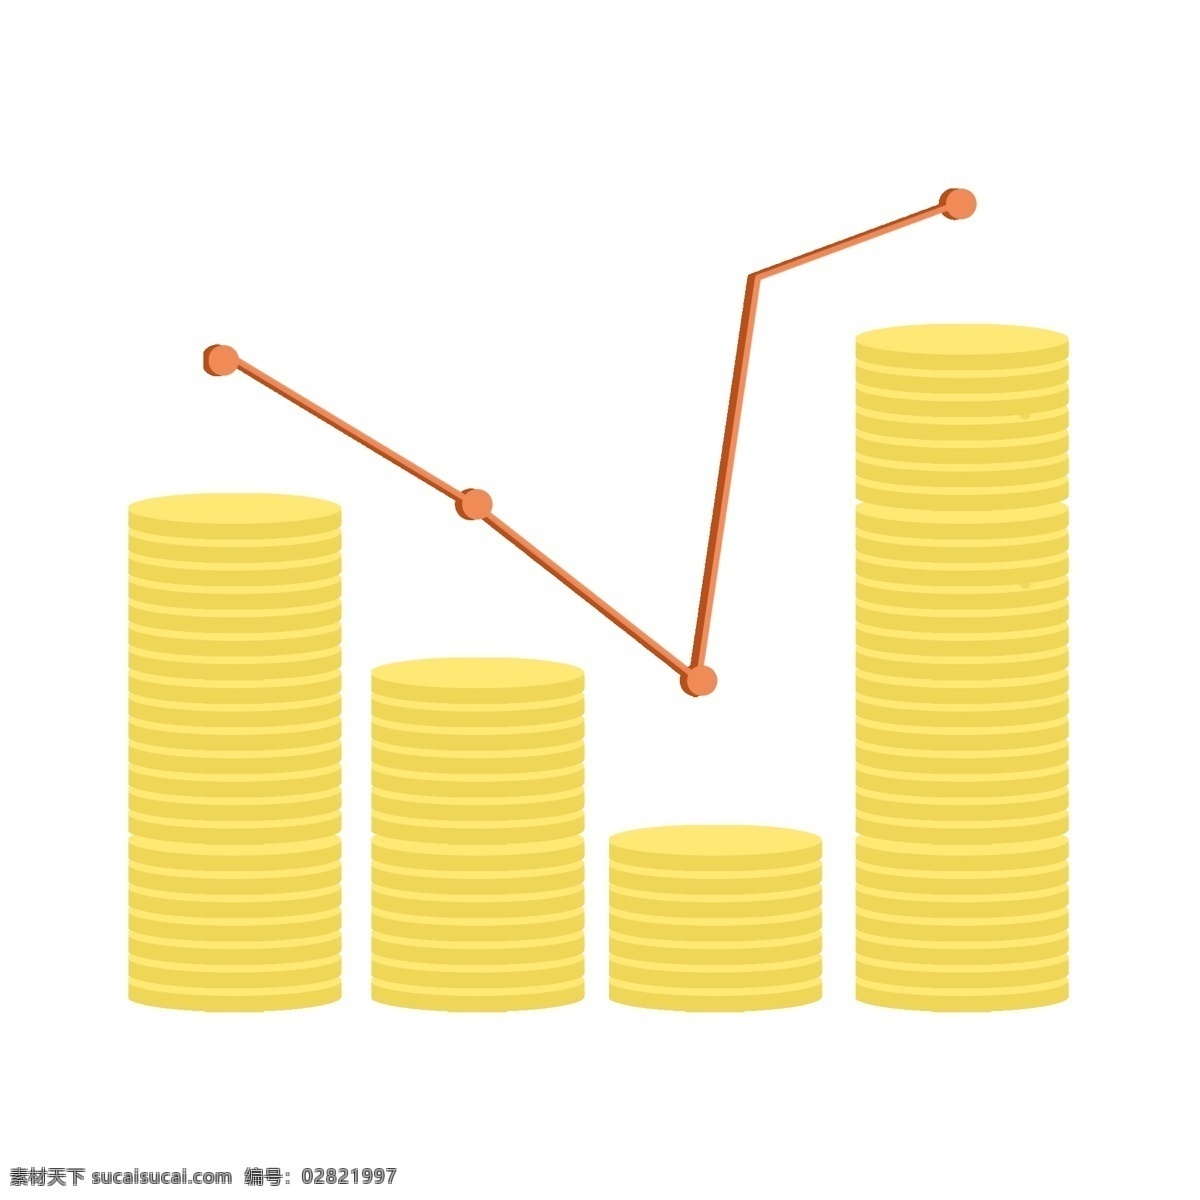 金融 分析图表 插画 黄色金币 金融分析 理财分析 数据分析 图表装饰插画 一摞金币